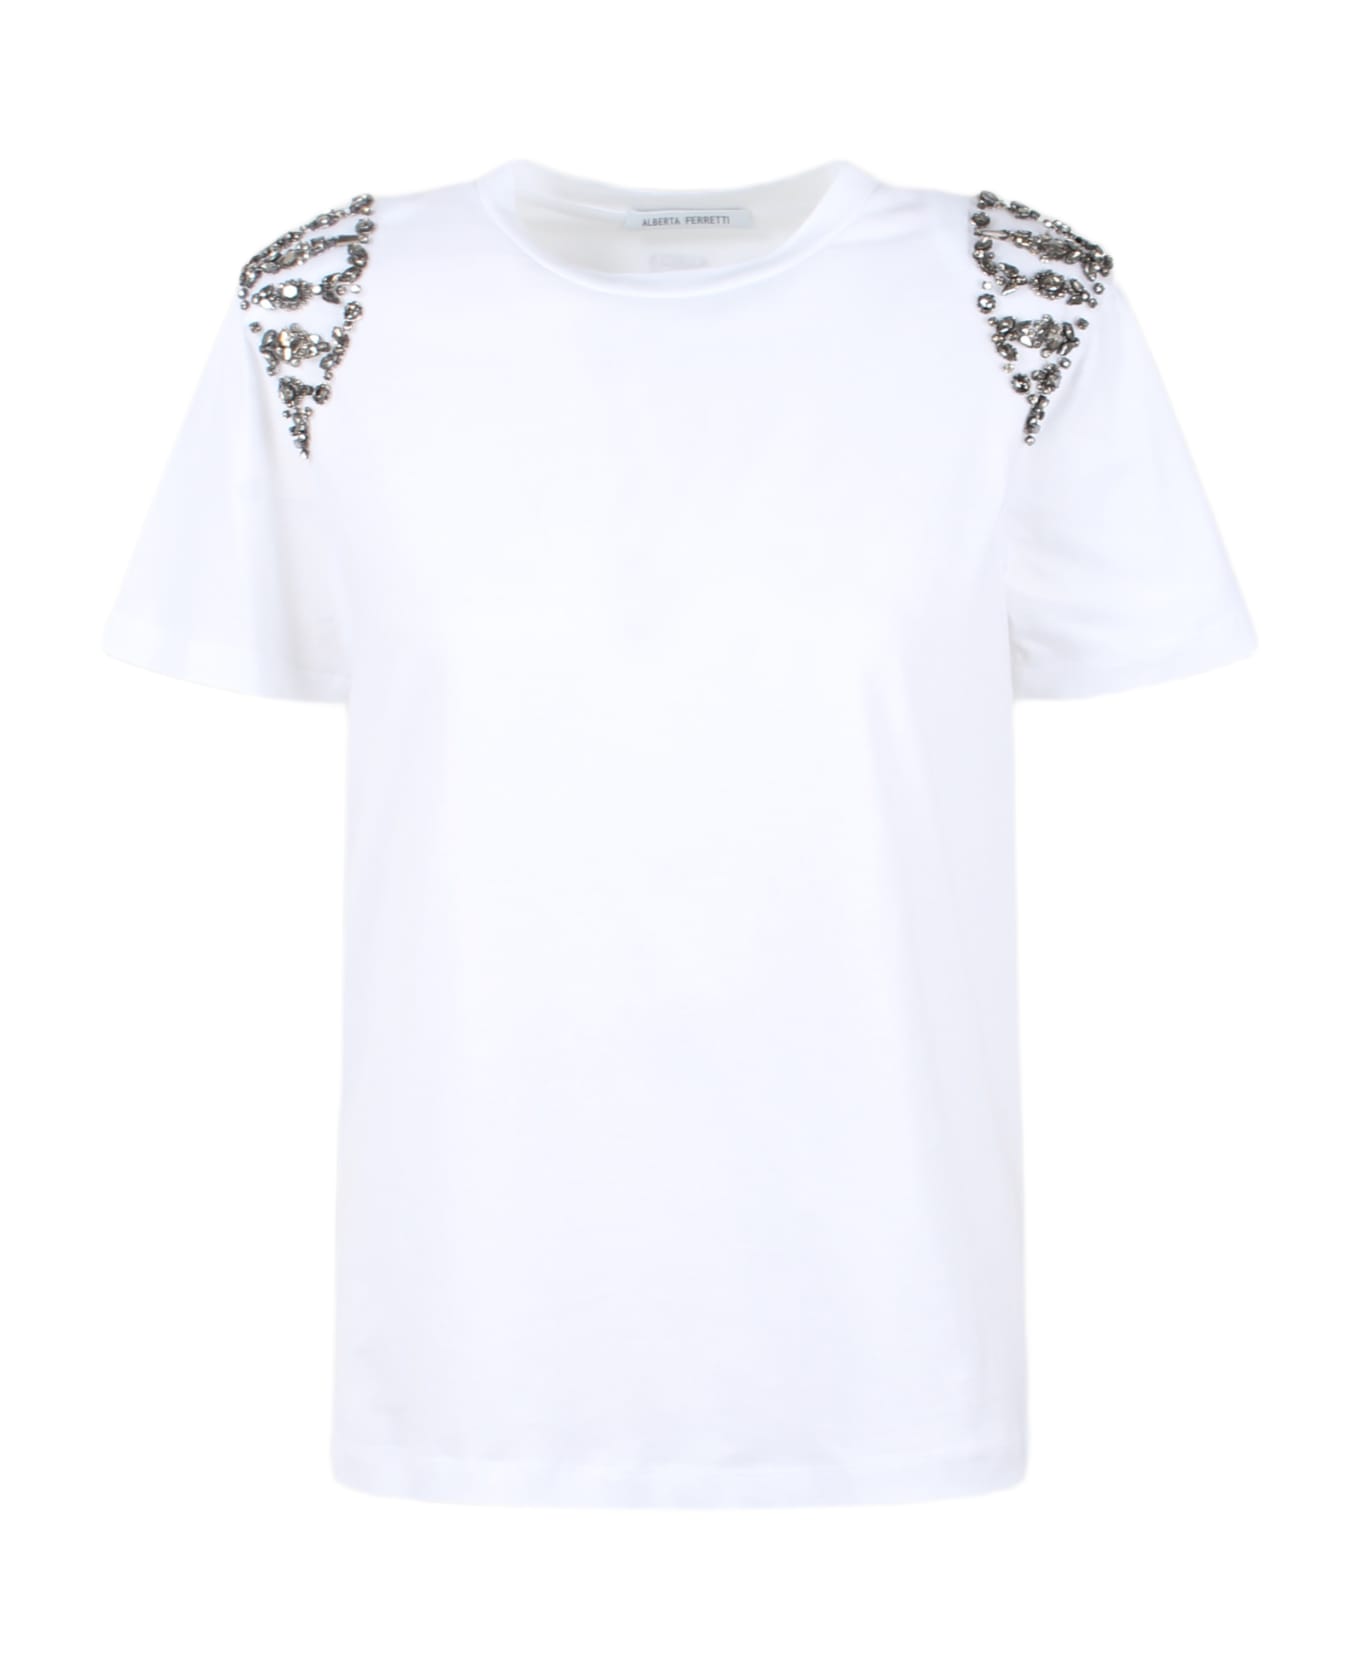 Alberta Ferretti Embroidered Cotton T-shirt - White Tシャツ